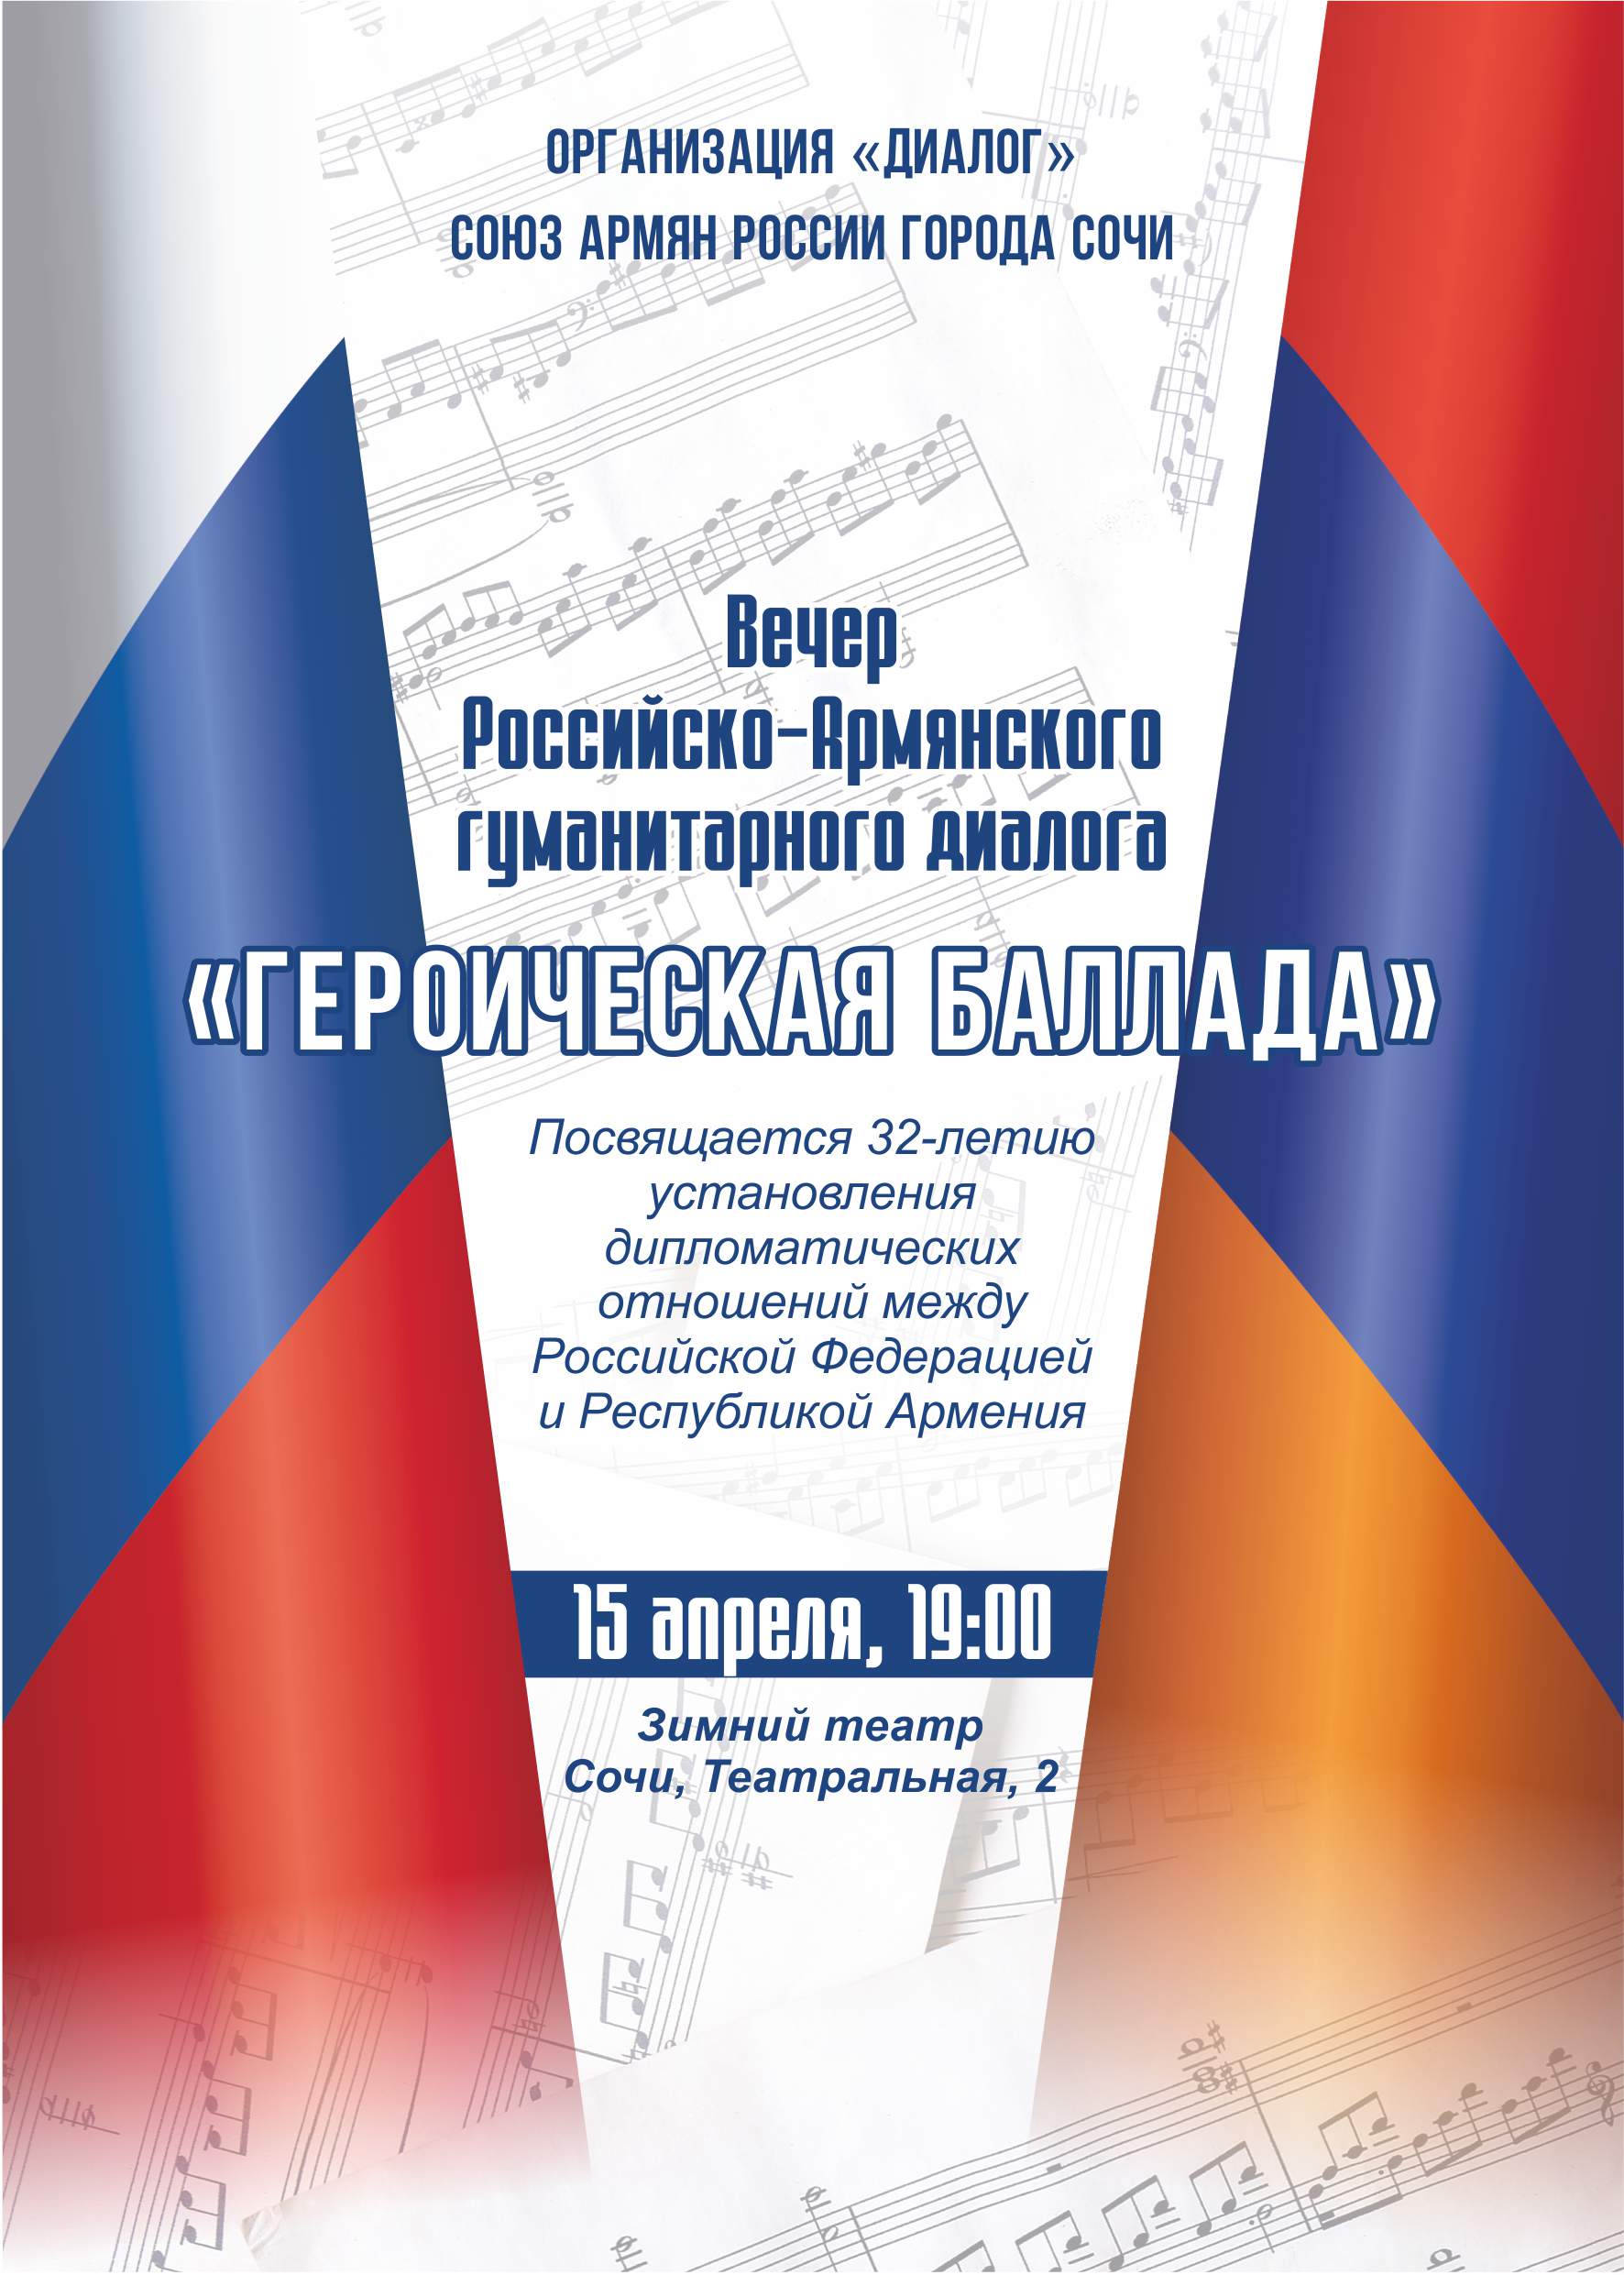 Вечер Российско-Армянского гуманитарного диалога «Героическая баллада» пройдет в Сочи 